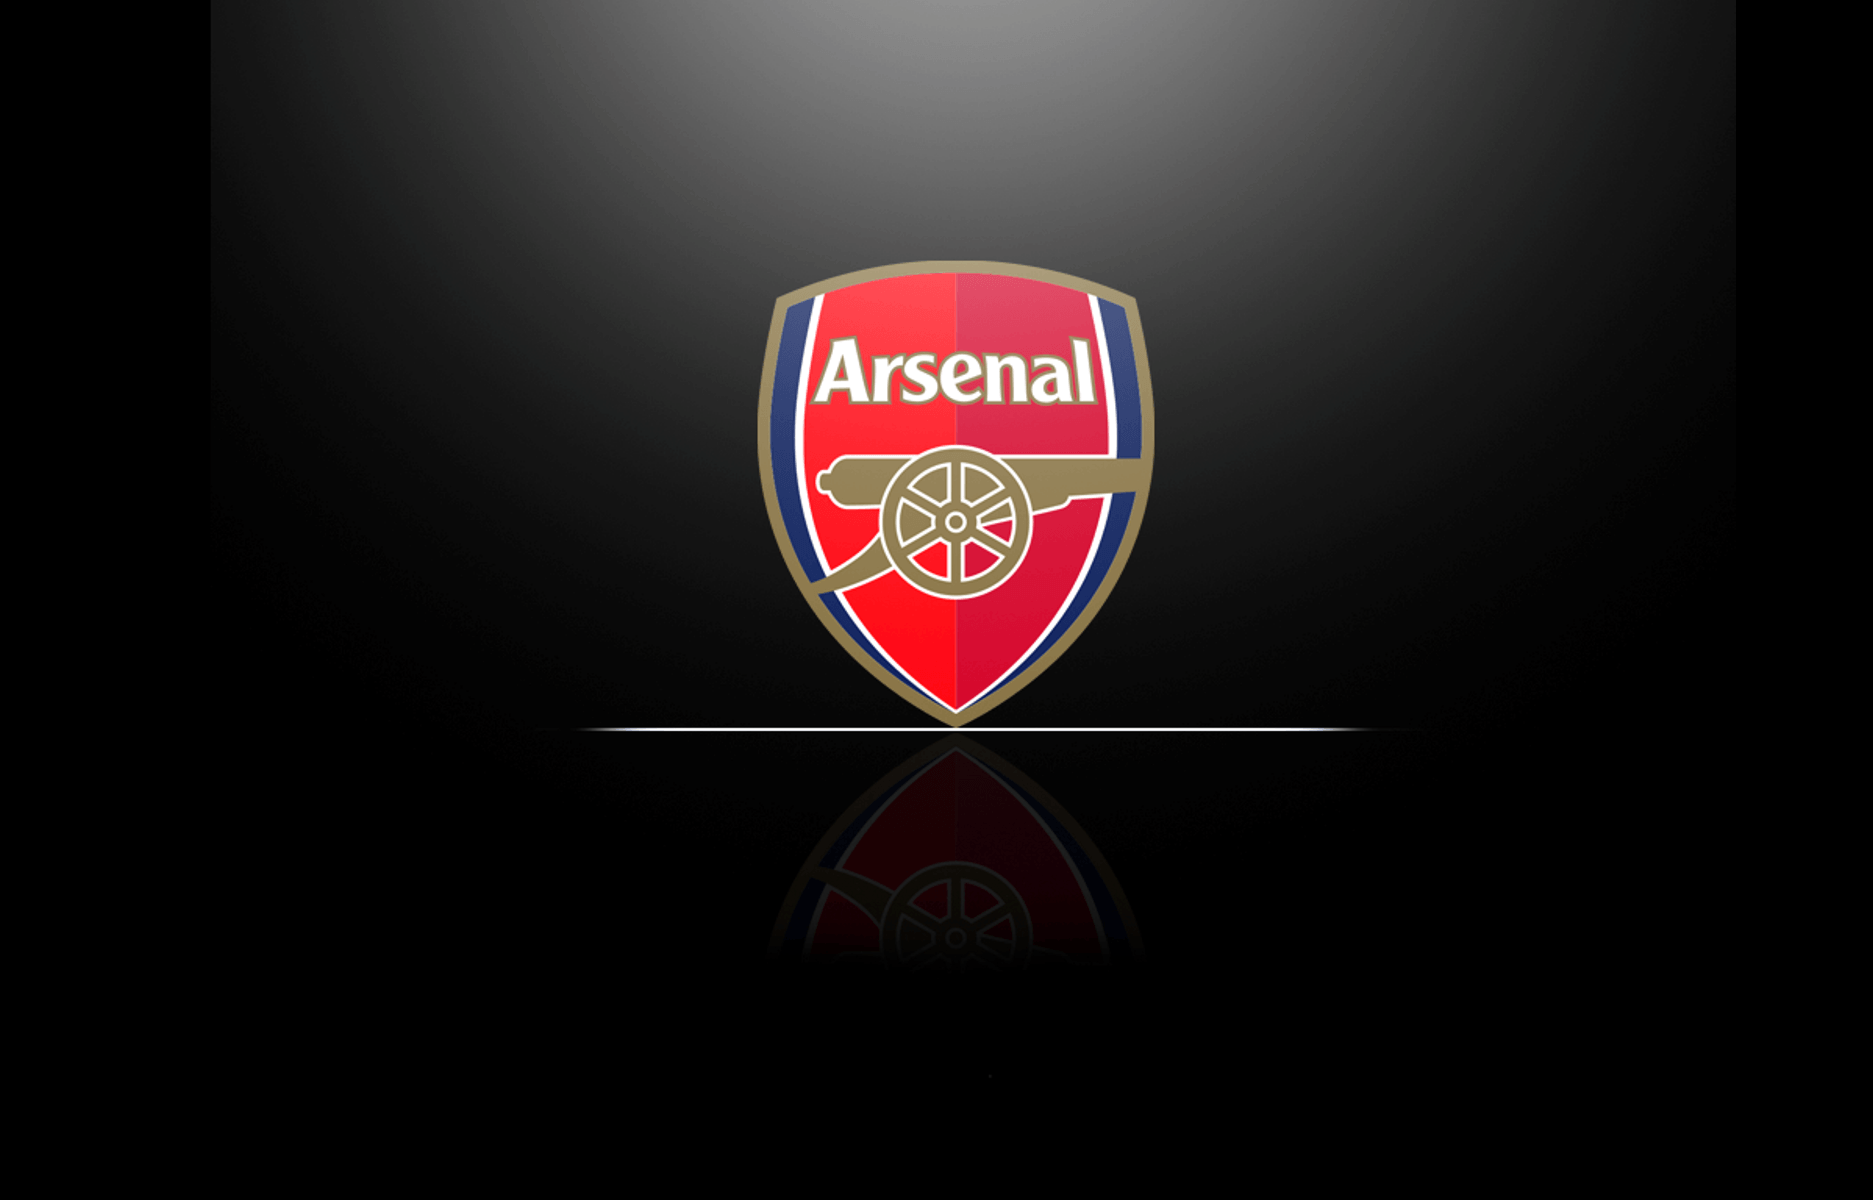 Logo Arsenal đẹp sẽ là lựa chọn hoàn hảo cho những ai yêu mến môn thể thao và đam mê đội bóng Arsenal. Với thiết kế tinh tế và phong cách đậm chất bóng đá, logo Arsenal đẹp sẽ đem lại cho bạn niềm vui và sự tự hào về đội bóng của mình.